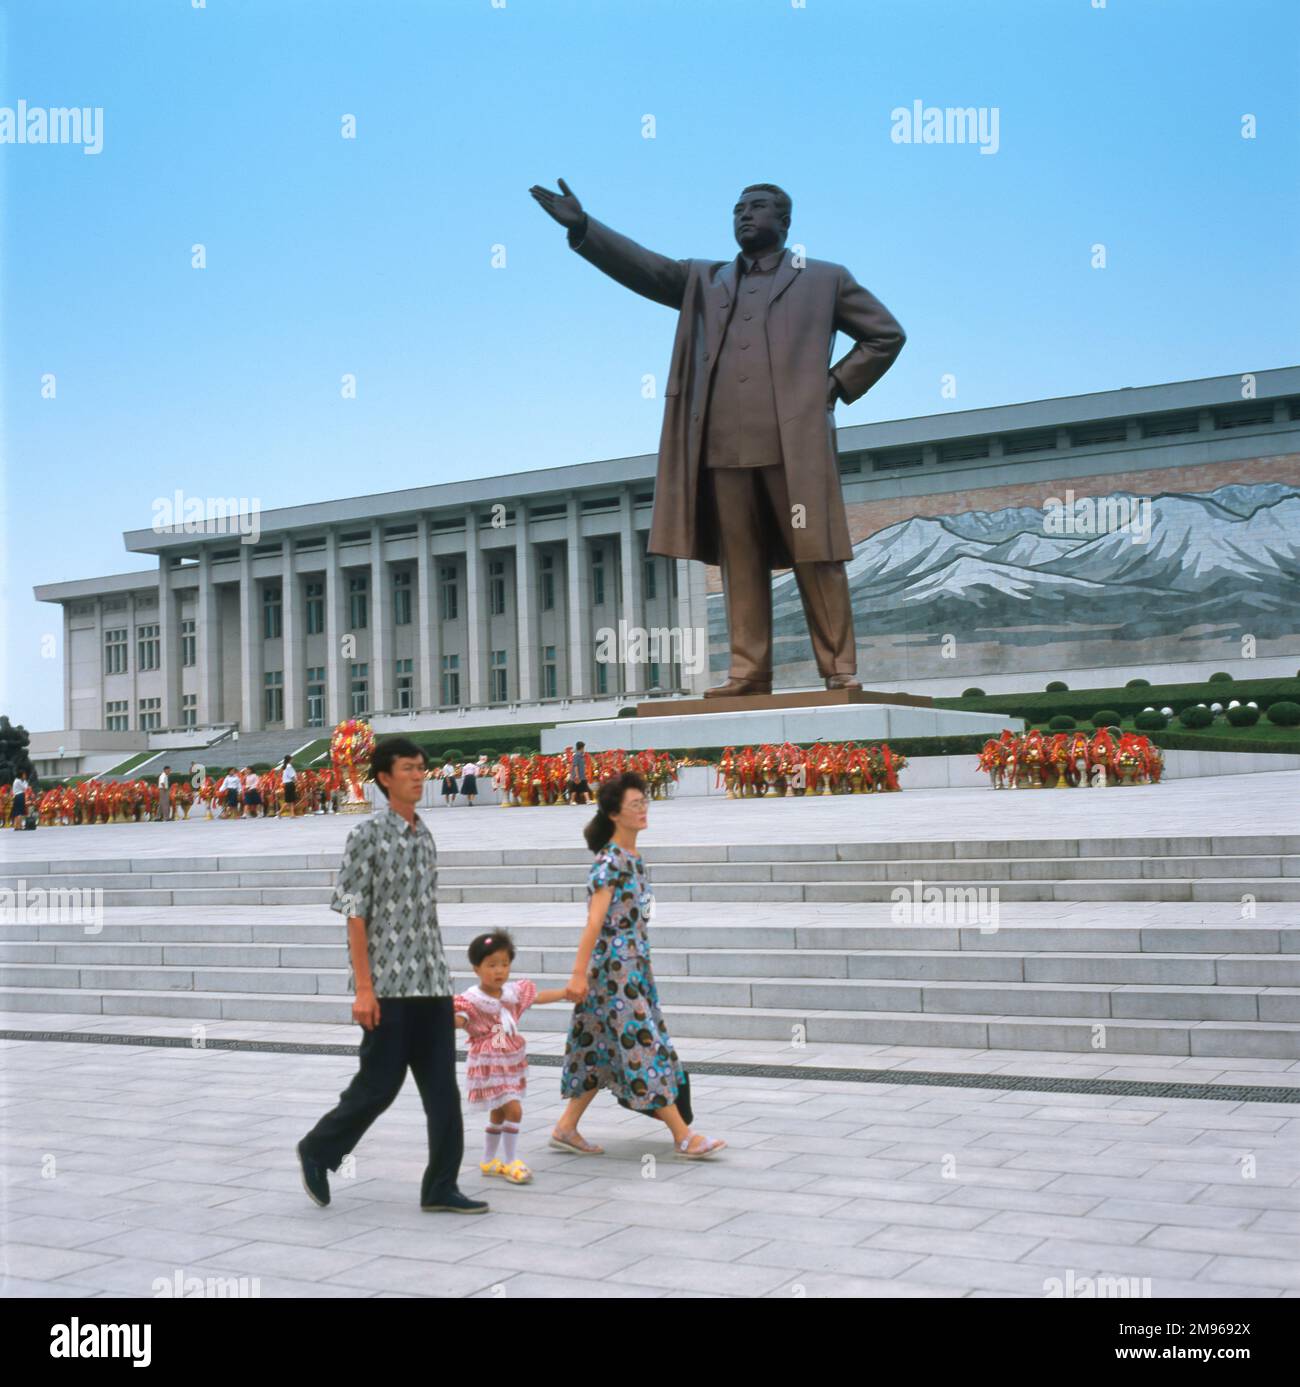 Statue géante de Kim il Sung (1912-1994), chef communiste de la Corée du Nord. La statue est le point central du monument Mansudae Grand, et se trouve à Mansu Hill, Pyongyang, capitale de la Corée du Nord. De vingt mètres de haut, il a été construit en 1972 pour commémorer l'anniversaire du leader en 60th. Kim il Sung a dirigé la Corée du Nord de sa fondation en 1948 jusqu'à sa mort, d'abord en tant que Premier ministre, puis en tant que Président. Selon la légende, la statue devait à l'origine être de 40 mètres de haut, mais la modestie de Kim il Sung exigeait qu'elle soit plus petite. Banque D'Images